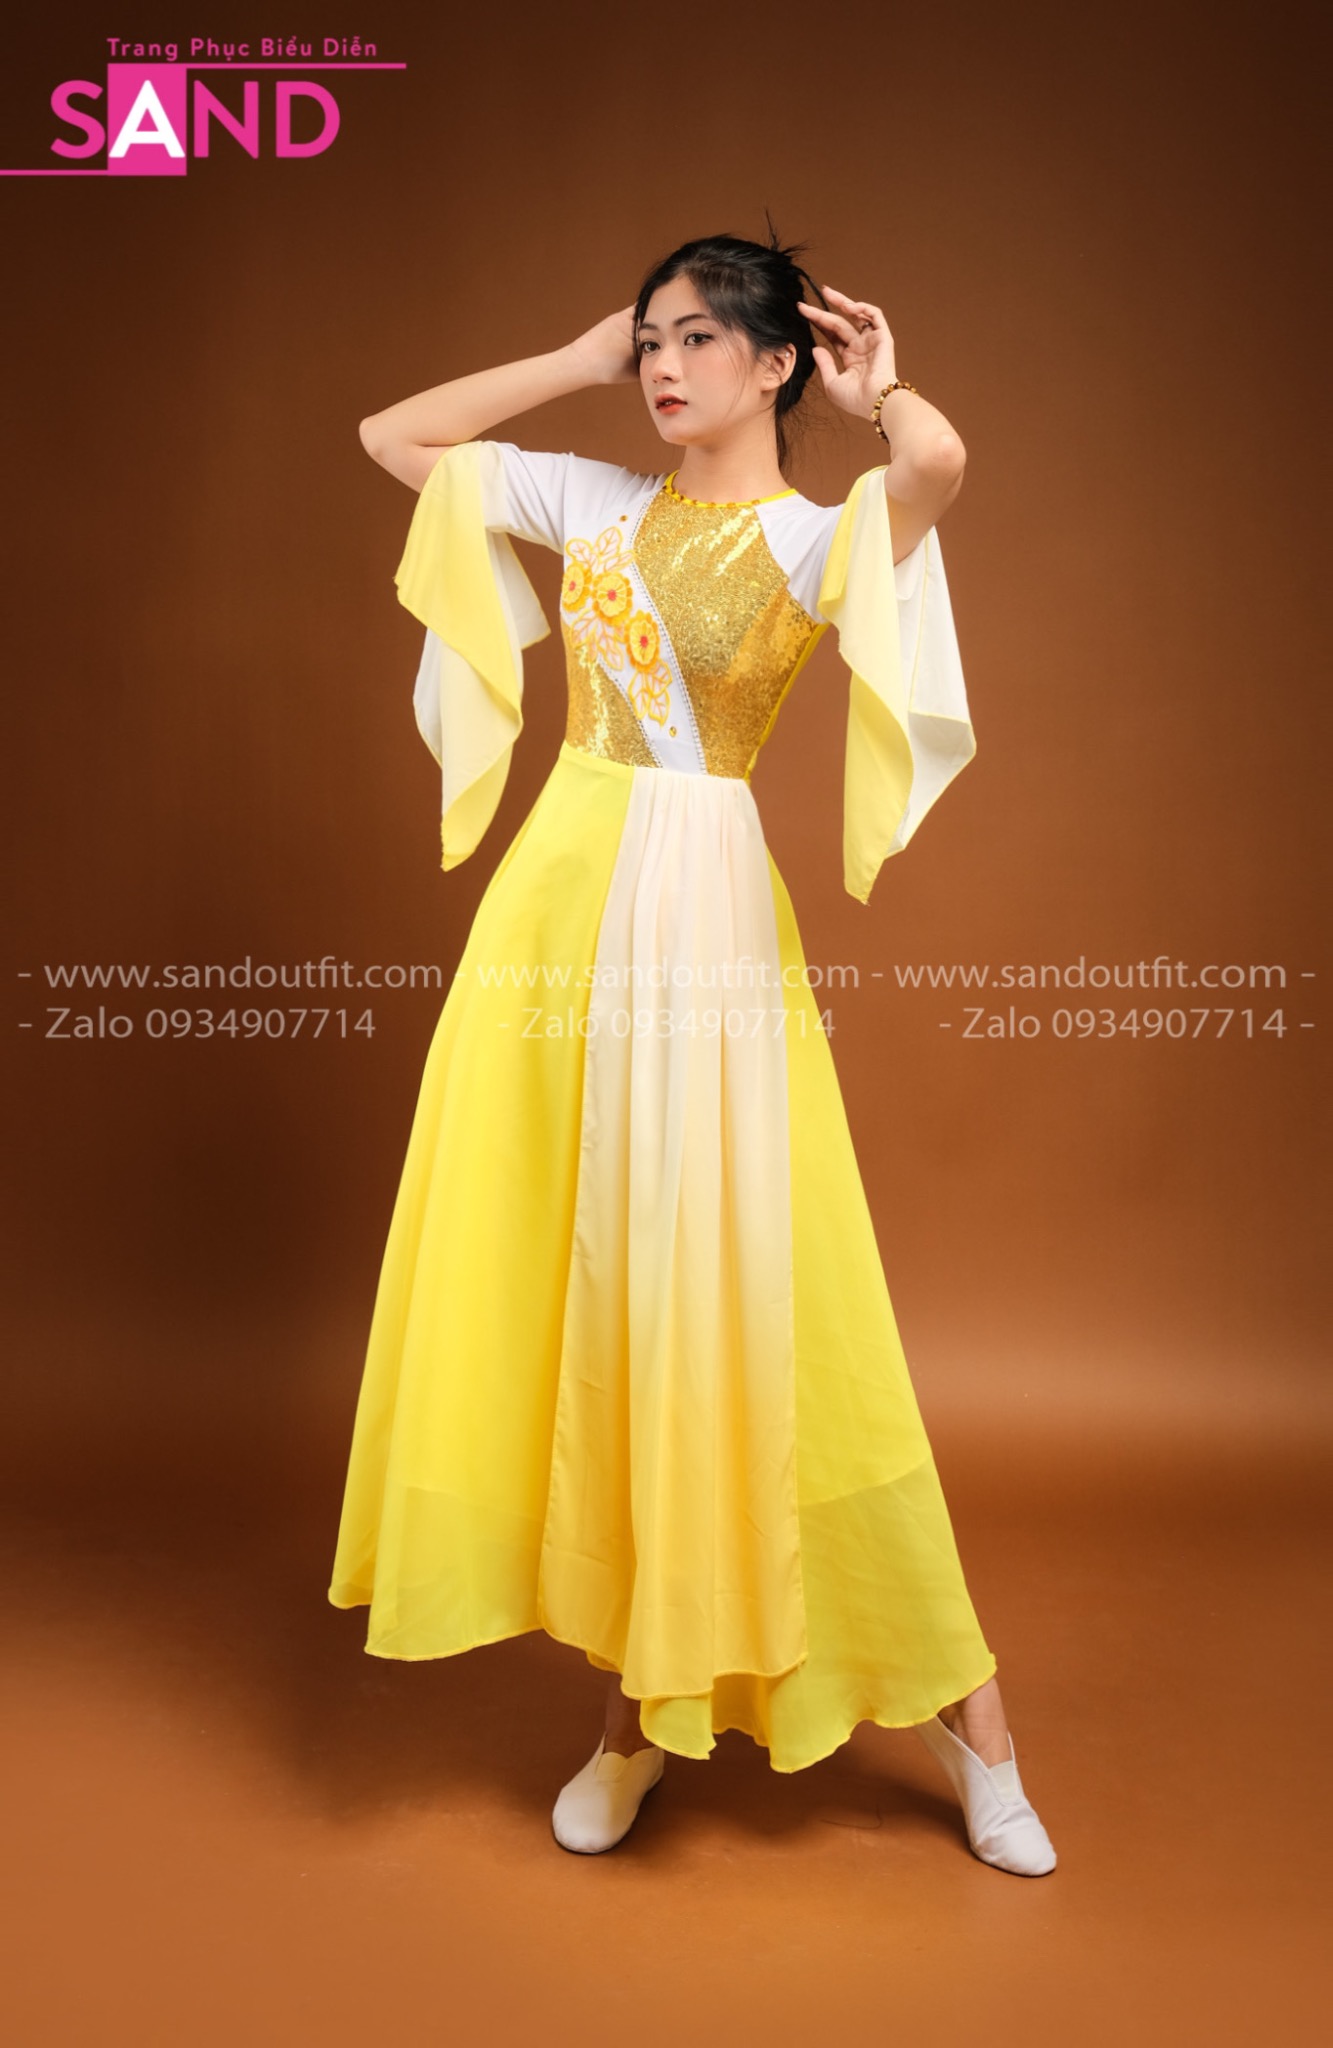 Thuê váy múa sen đẹp,rẻ ở đâu? Mới 100%, giá: 70.000đ, gọi: 0986 987 839,  Quận Gò Vấp - Hồ Chí Minh, id-93630b00